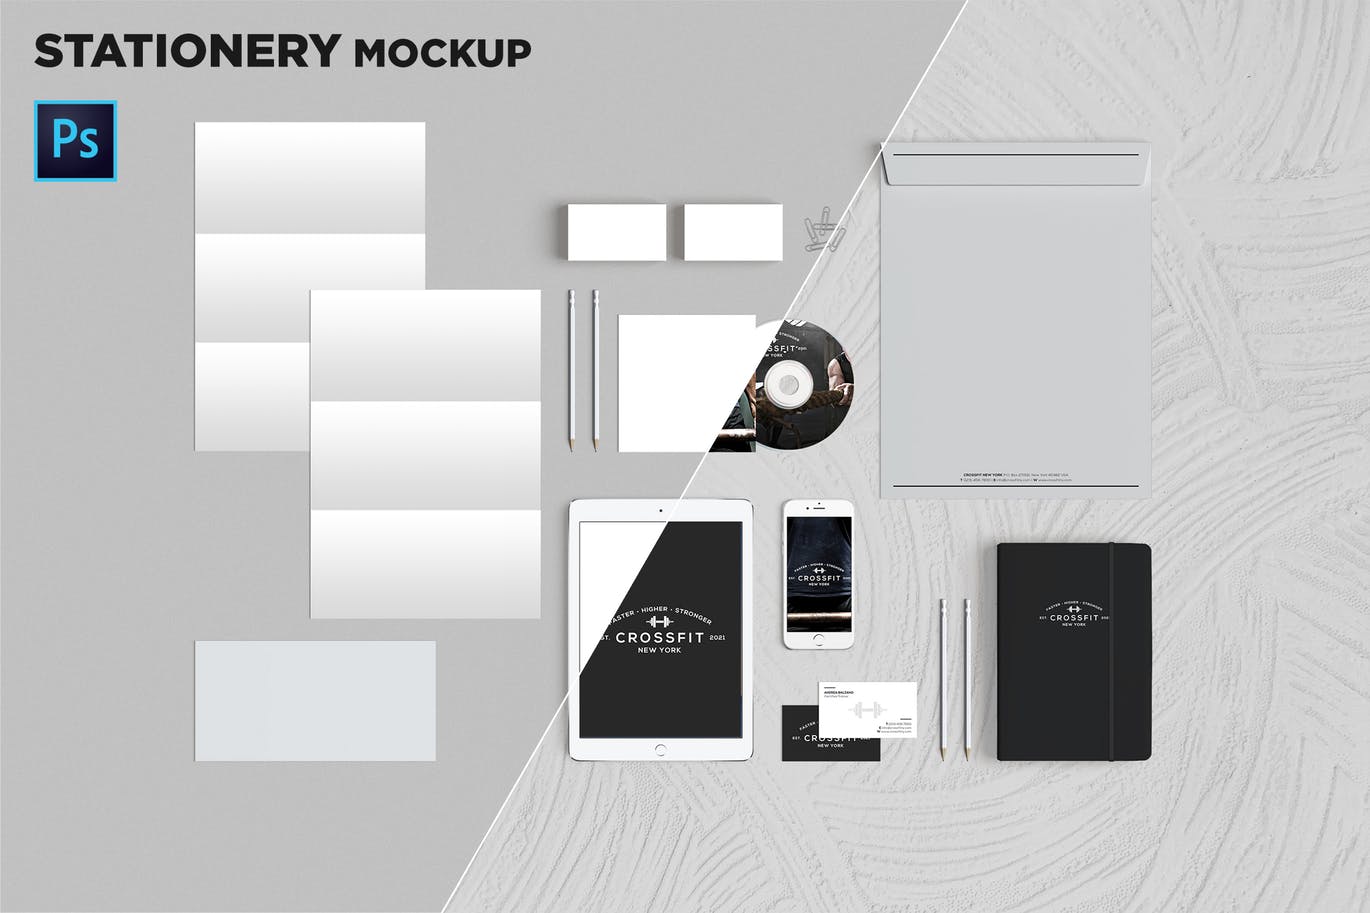 品牌VI标识设计企业办公文具素材库精选模板06 Brand Identity / Stationery Mockup 06插图